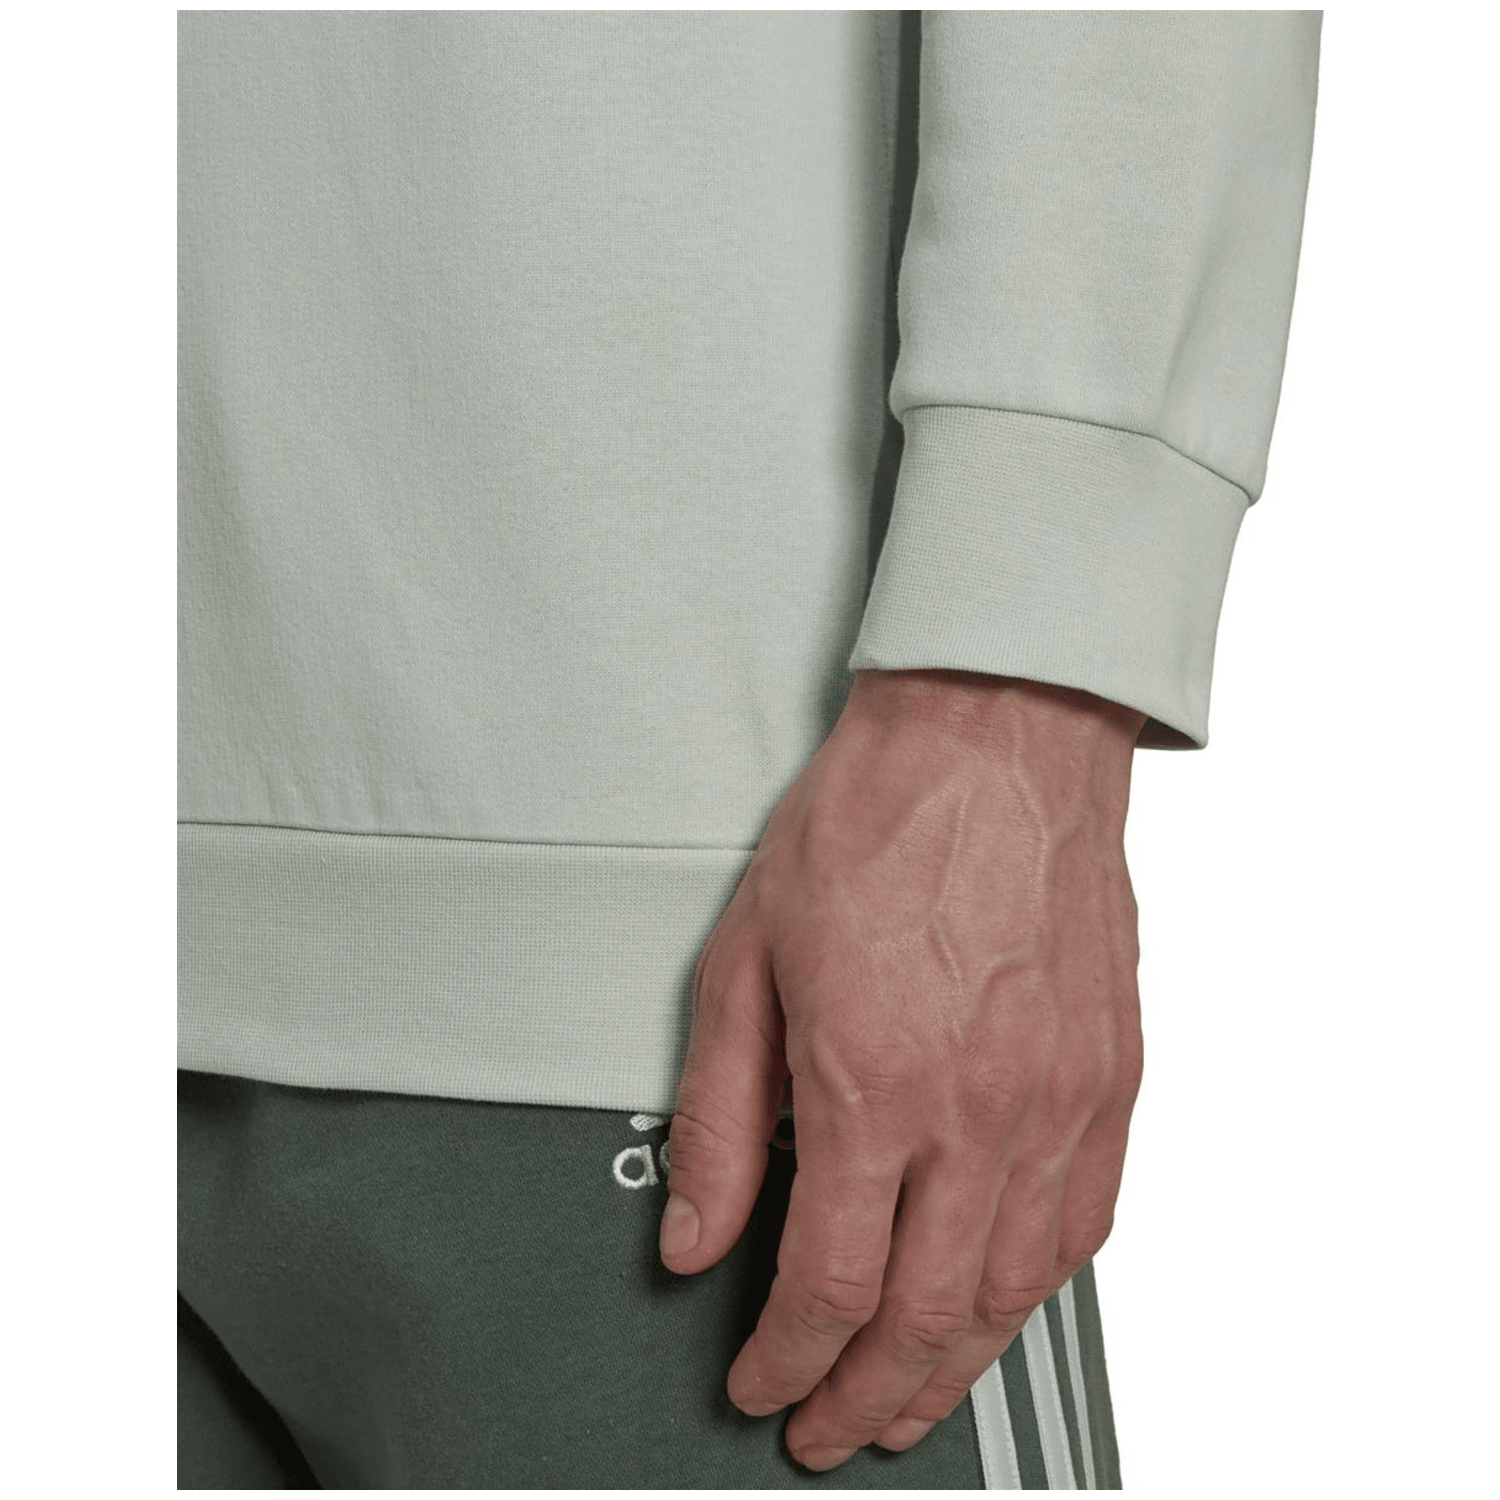 Adidas Essentials Fleece Sweatshirt Herren